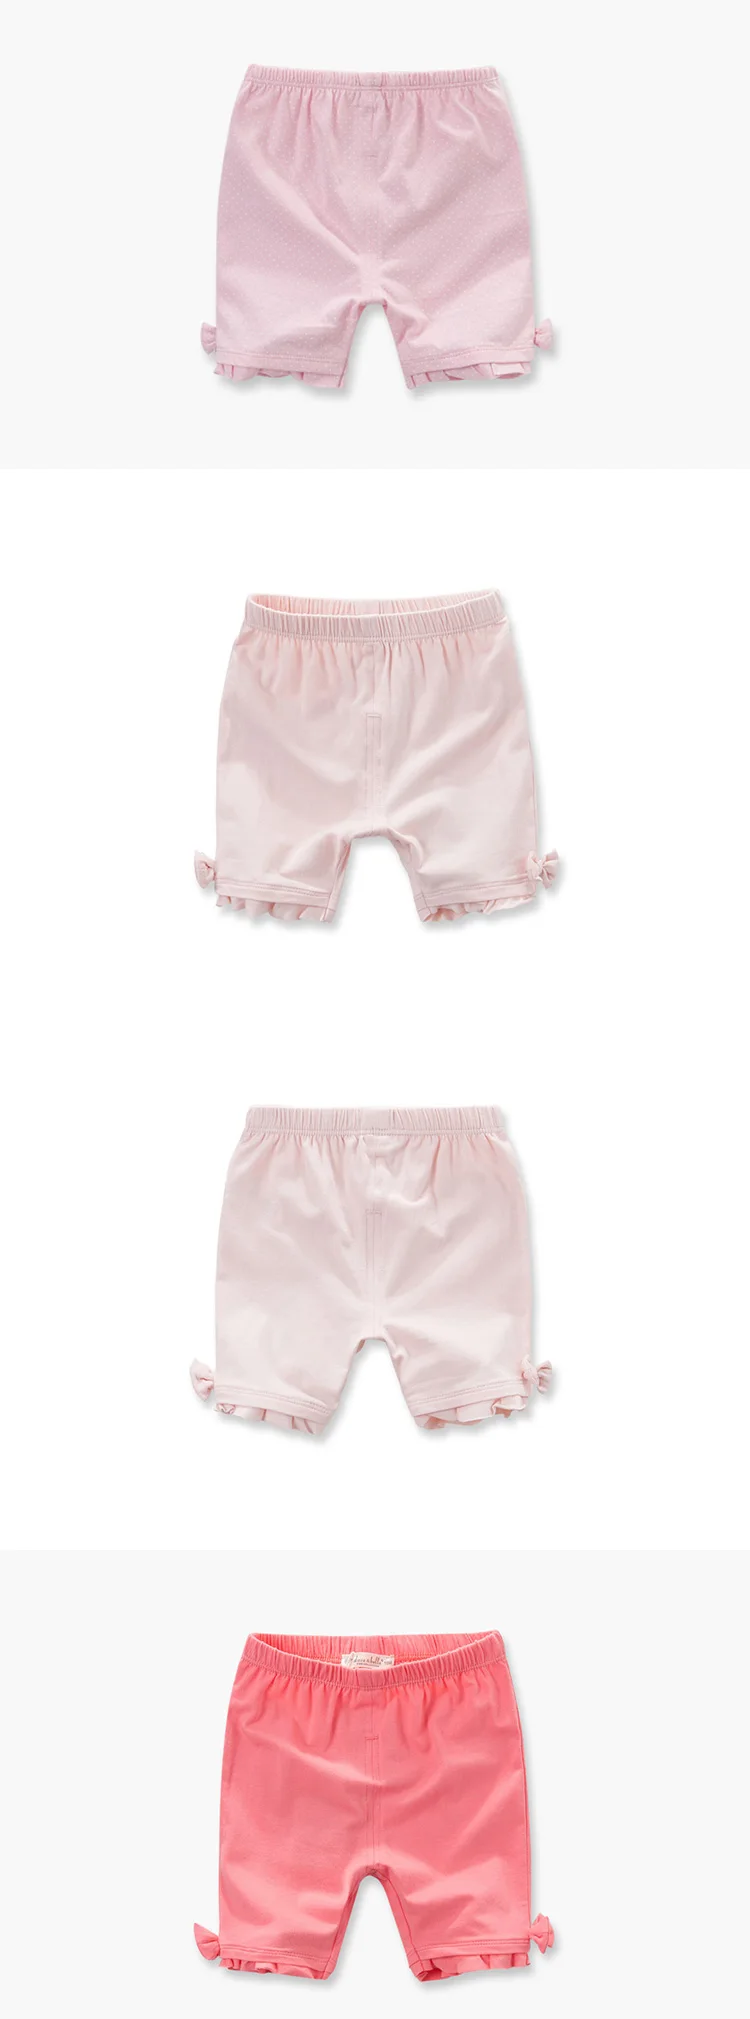 DB1225 dave bella/летние для маленьких девочек Шорты брюки для младенцев Одежда для малышей для девочек цветочные хлопковые брюки детские шорты Детская Штаны